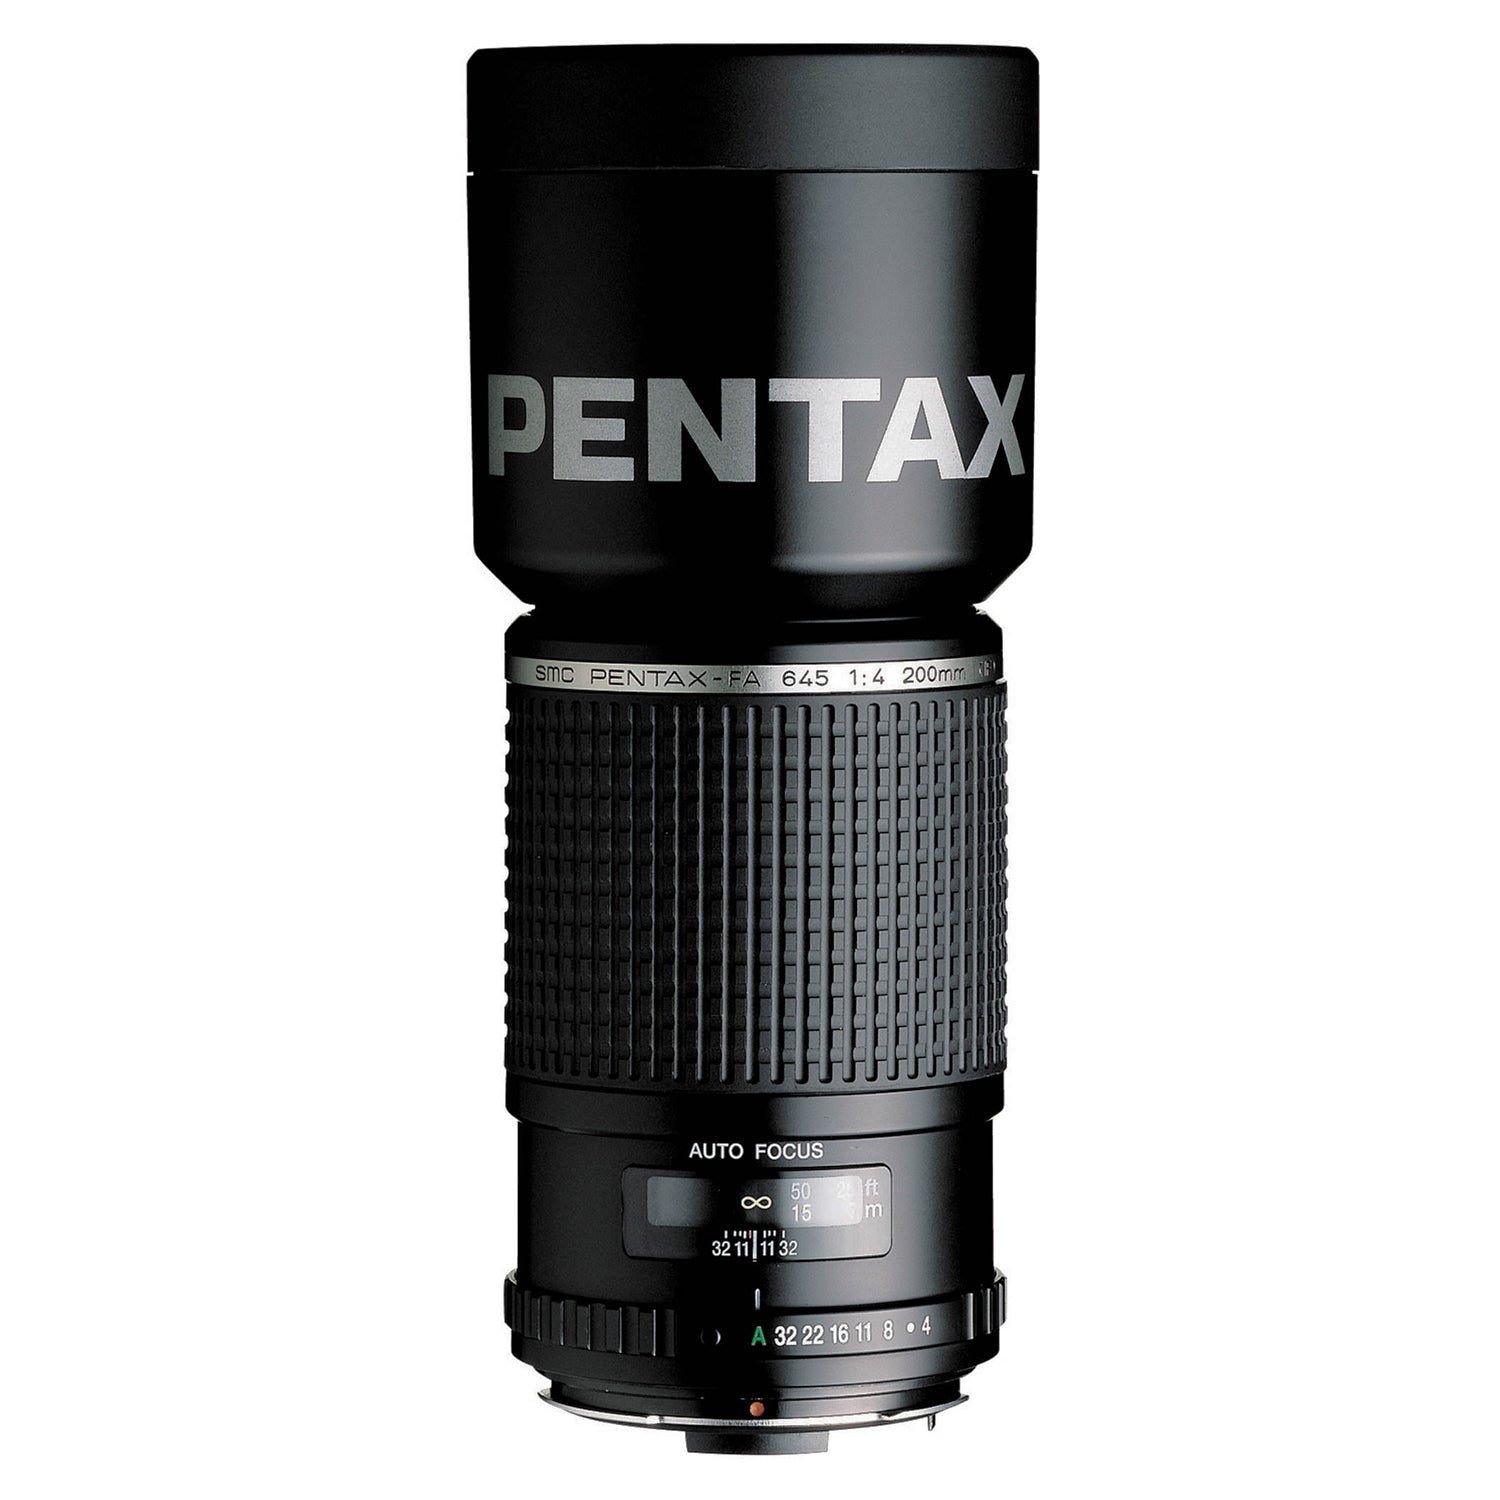 Pentax 645 FA 200mm f4 *Open Box